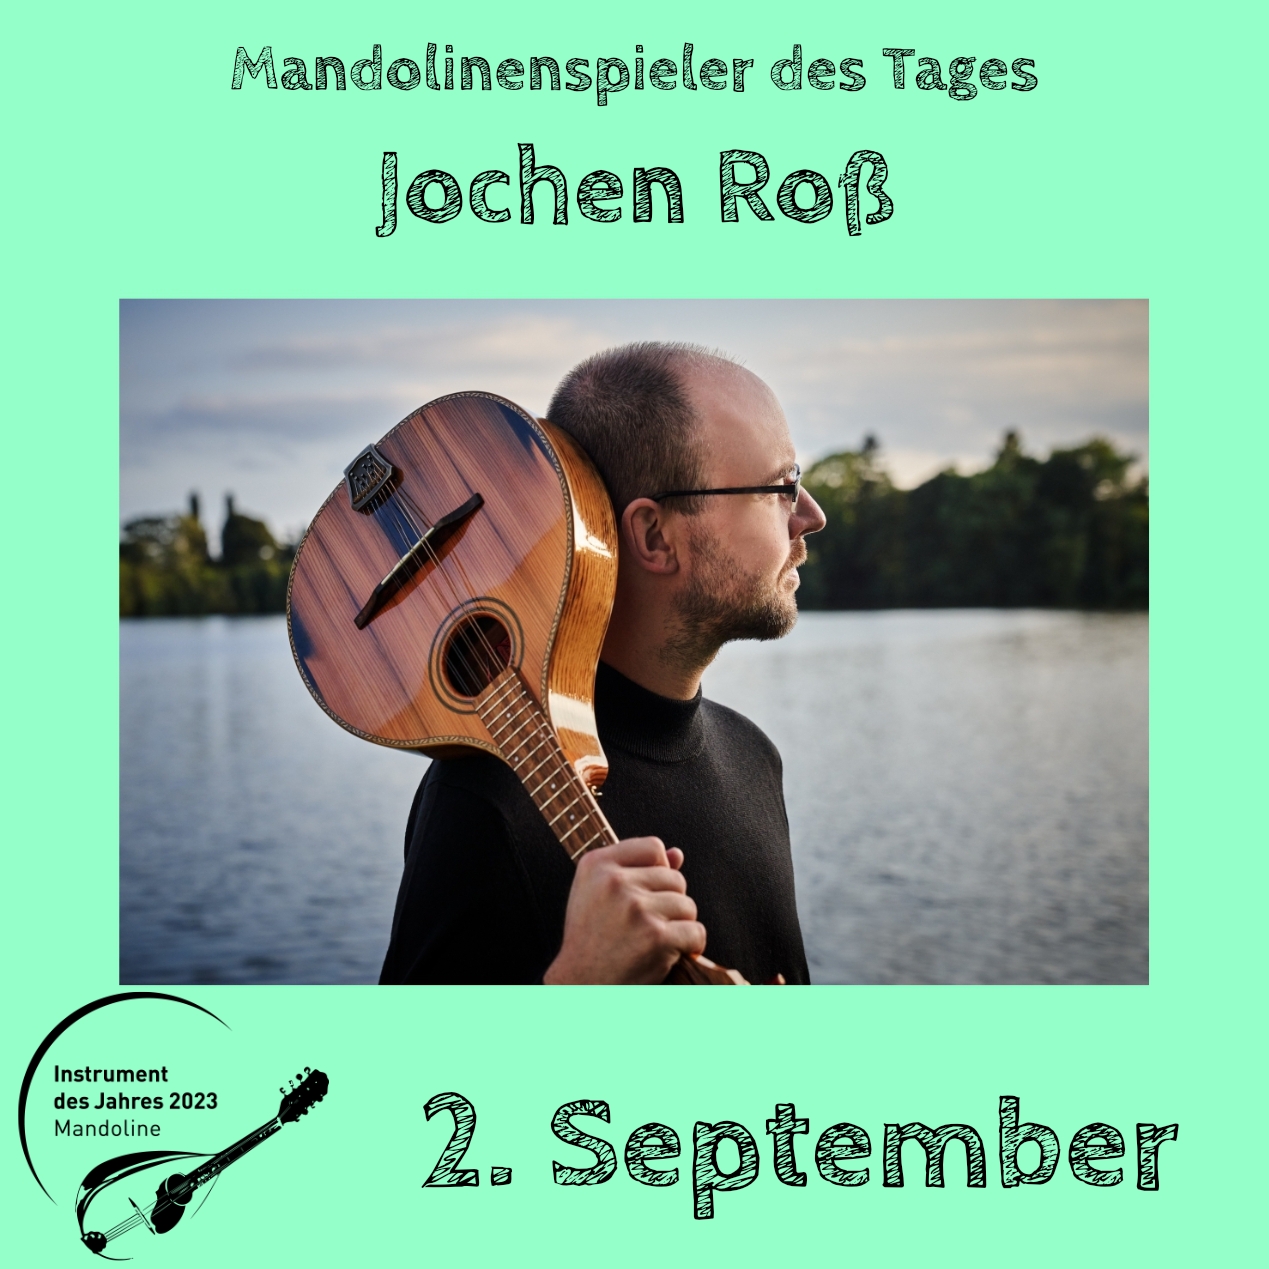 2. September - Jochen Roß Mandoline Instrument des Jahres 2023 Mandolinenspieler Mandolinenspielerin des Tages